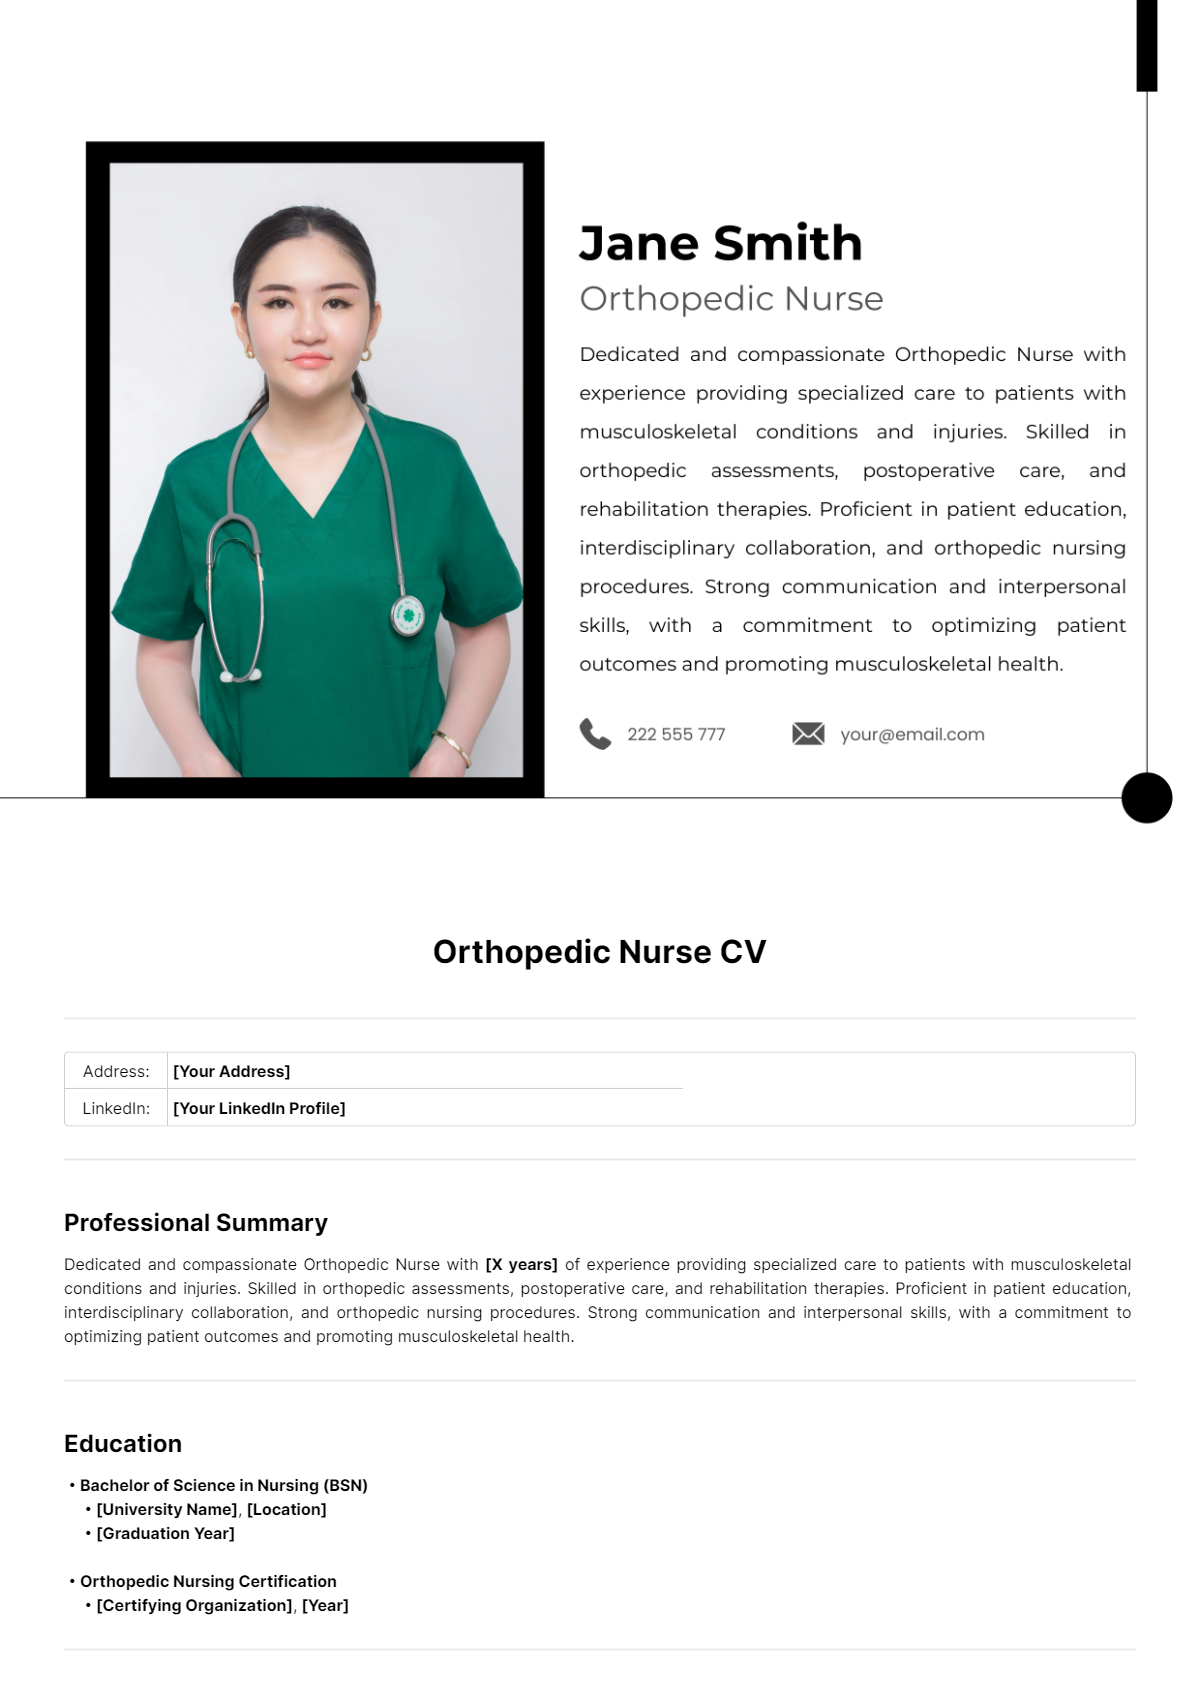 Free Orthopedic Nurse CV Template